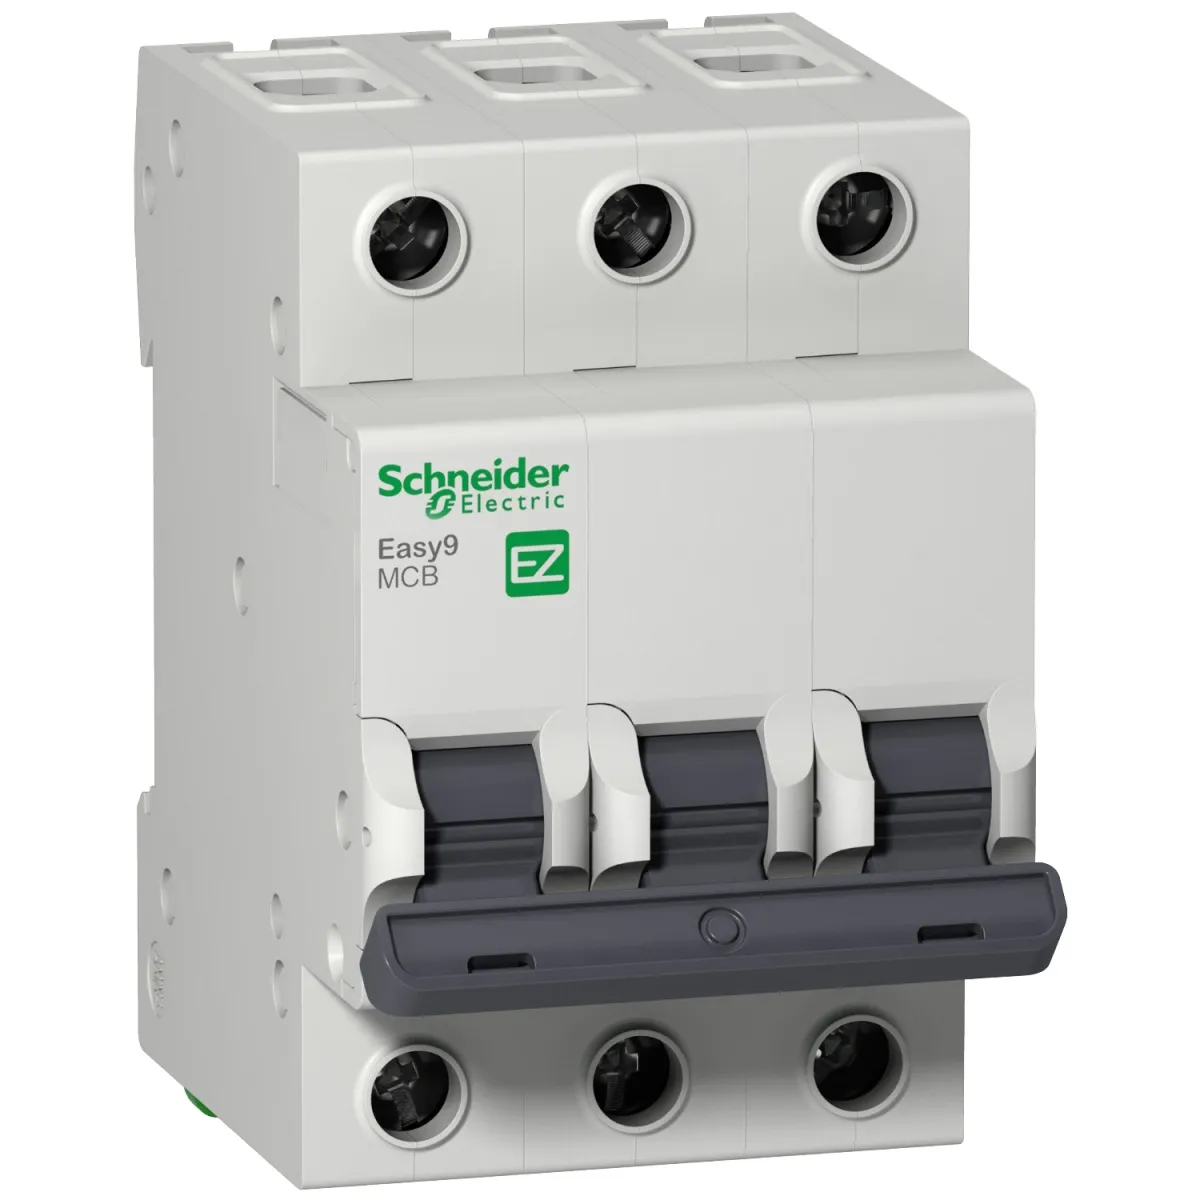 Автоматичні вимикачі Schneider Electric Resi9 — особливості та характеристики